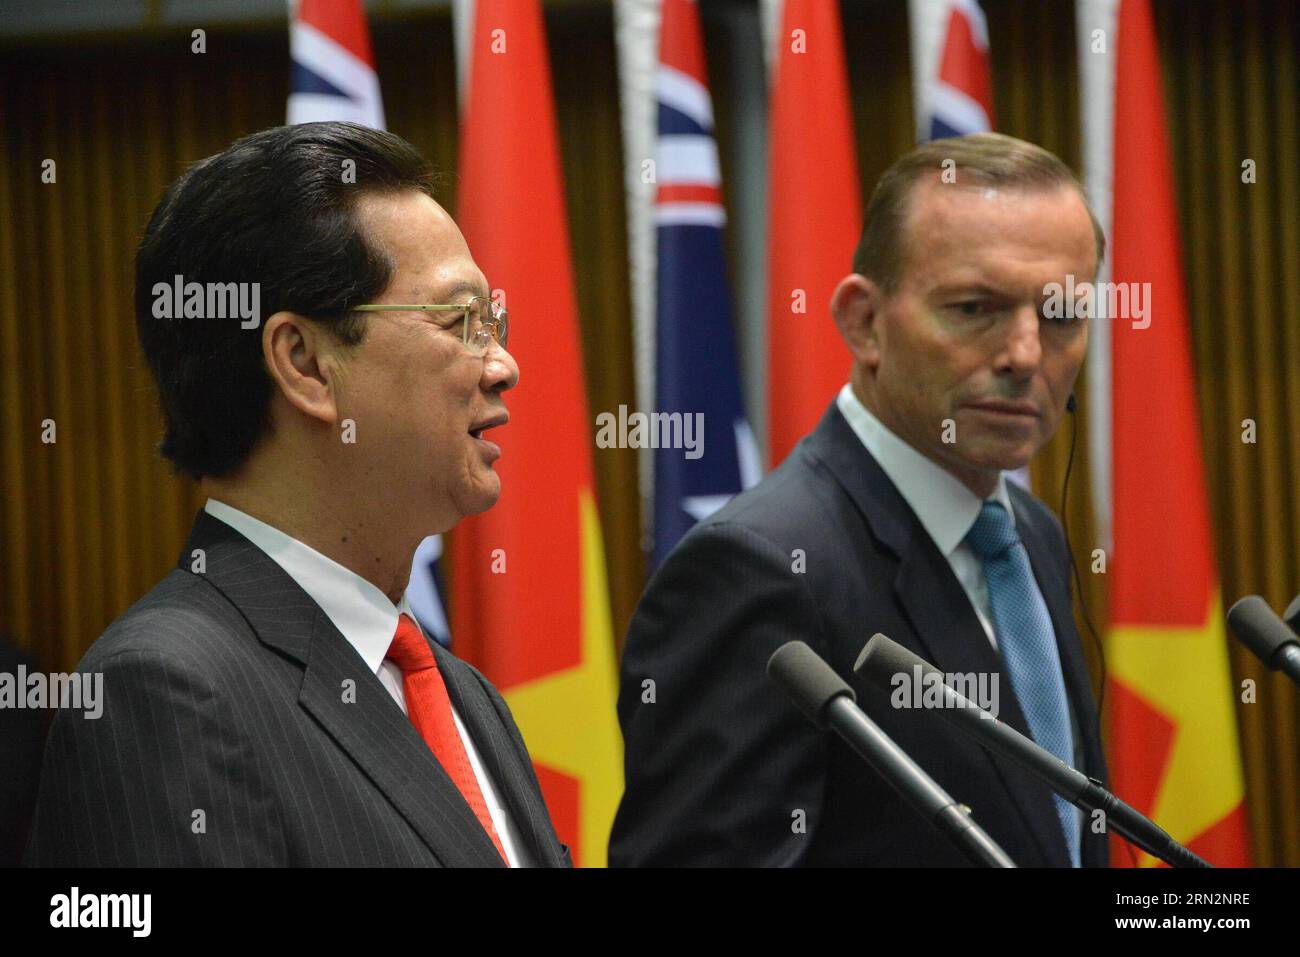 Visitando il primo ministro vietnamita Nguyen Tan Dung (L) e il primo ministro australiano Tony Abbott partecipano a una conferenza stampa congiunta presso il Parlamento di Canberra, Australia, 18 marzo 2015. ) AUSTRALIA-CANBERRA-VIETNAM-PM-VISITANDO XuxHaijing PUBLICATIONxNOTxINxCHN visitando i primi ministri vietnamiti Nguyen TAN Dung l e i primi ministri australiani Tony Abbott partecipano a una conferenza stampa congiunta PRESSO il Parlamento di Canberra Australia 18 marzo 2015 Australia Canberra Vietnam PM visitando PUBLICATIONxNOTxINxCHN Foto Stock